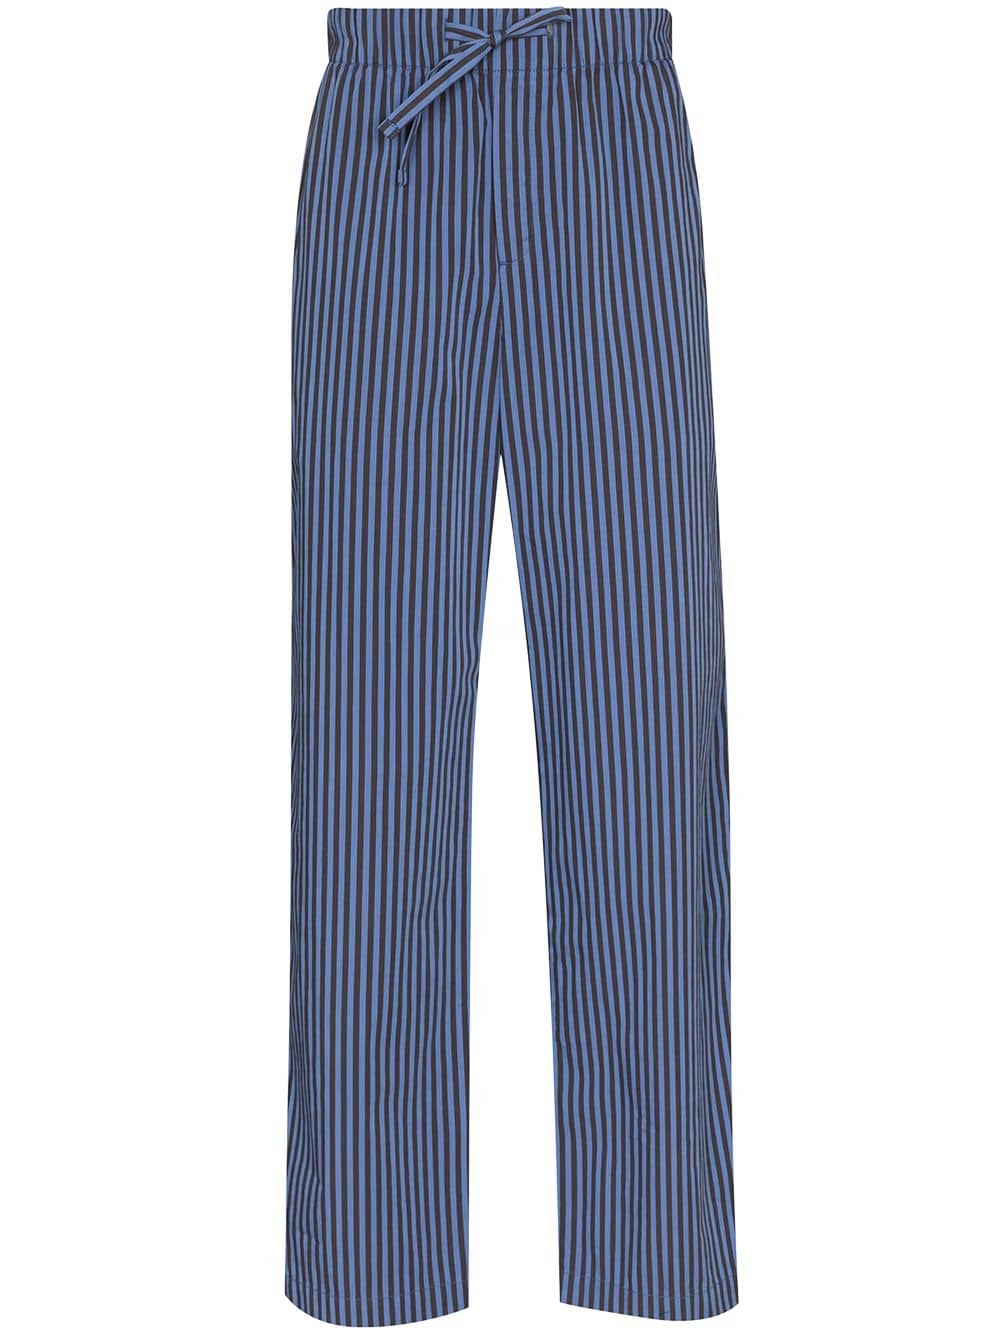 фото Tekla пижамные брюки verneuil в полоску